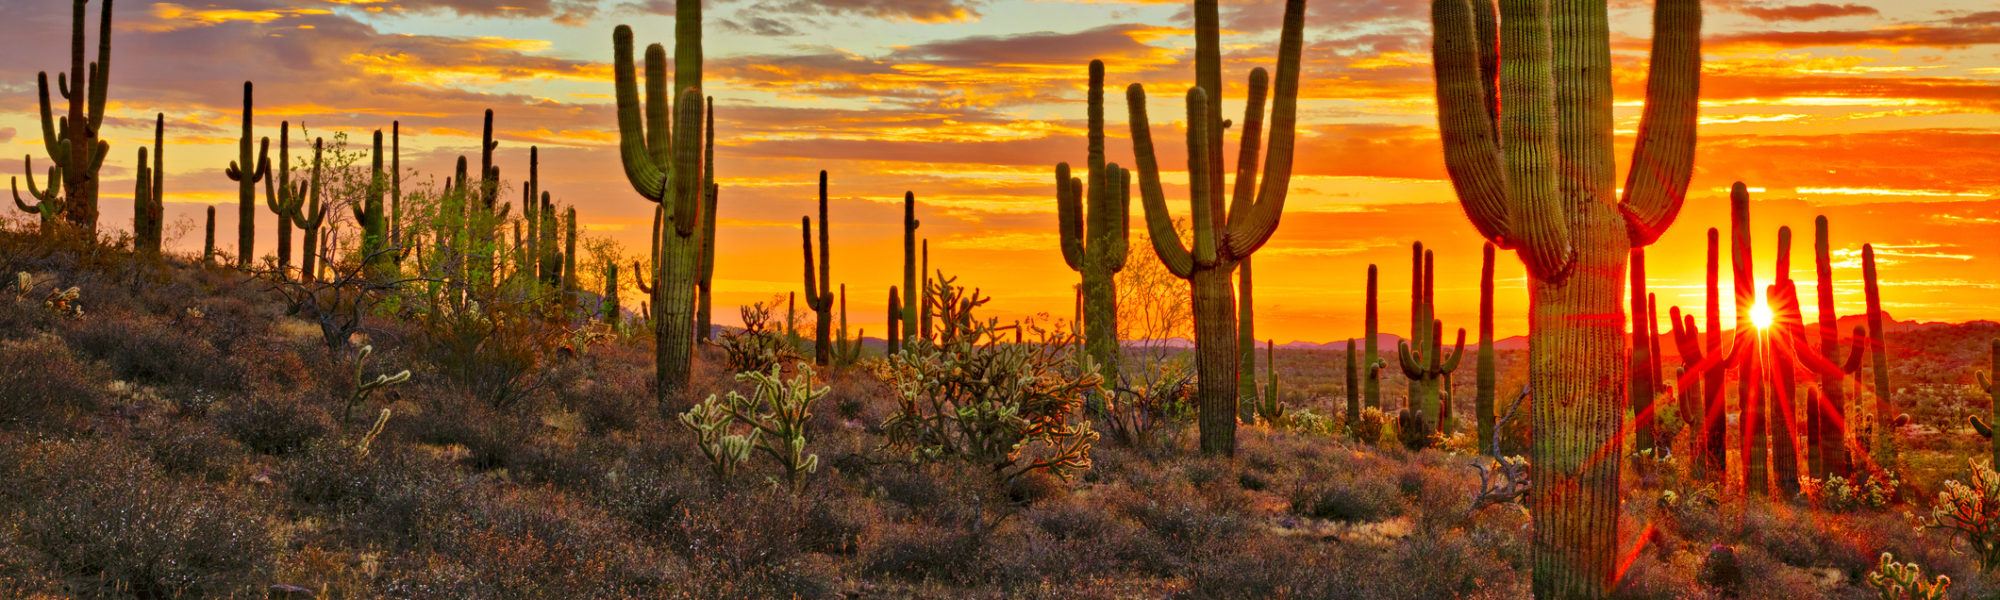 Sunset in Sonoran Desert, near Phoenix